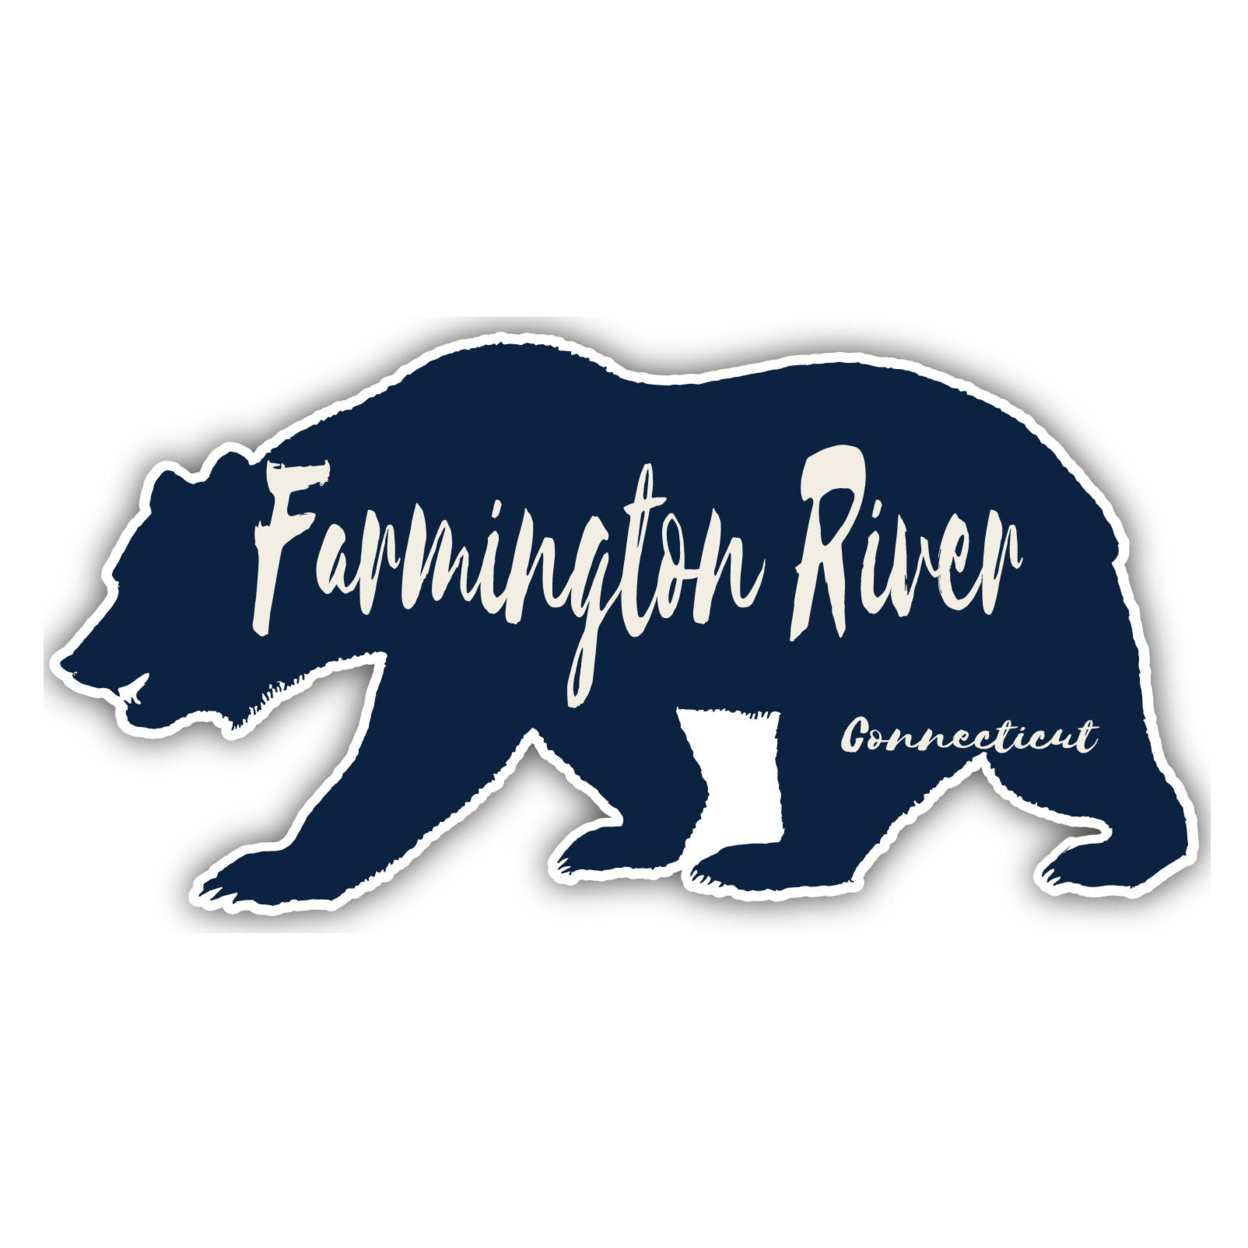 Farmington River Connecticut Souvenir Decorative Stickers (Choose Theme And Size) - Single Unit, 2-Inch, Great Outdoors